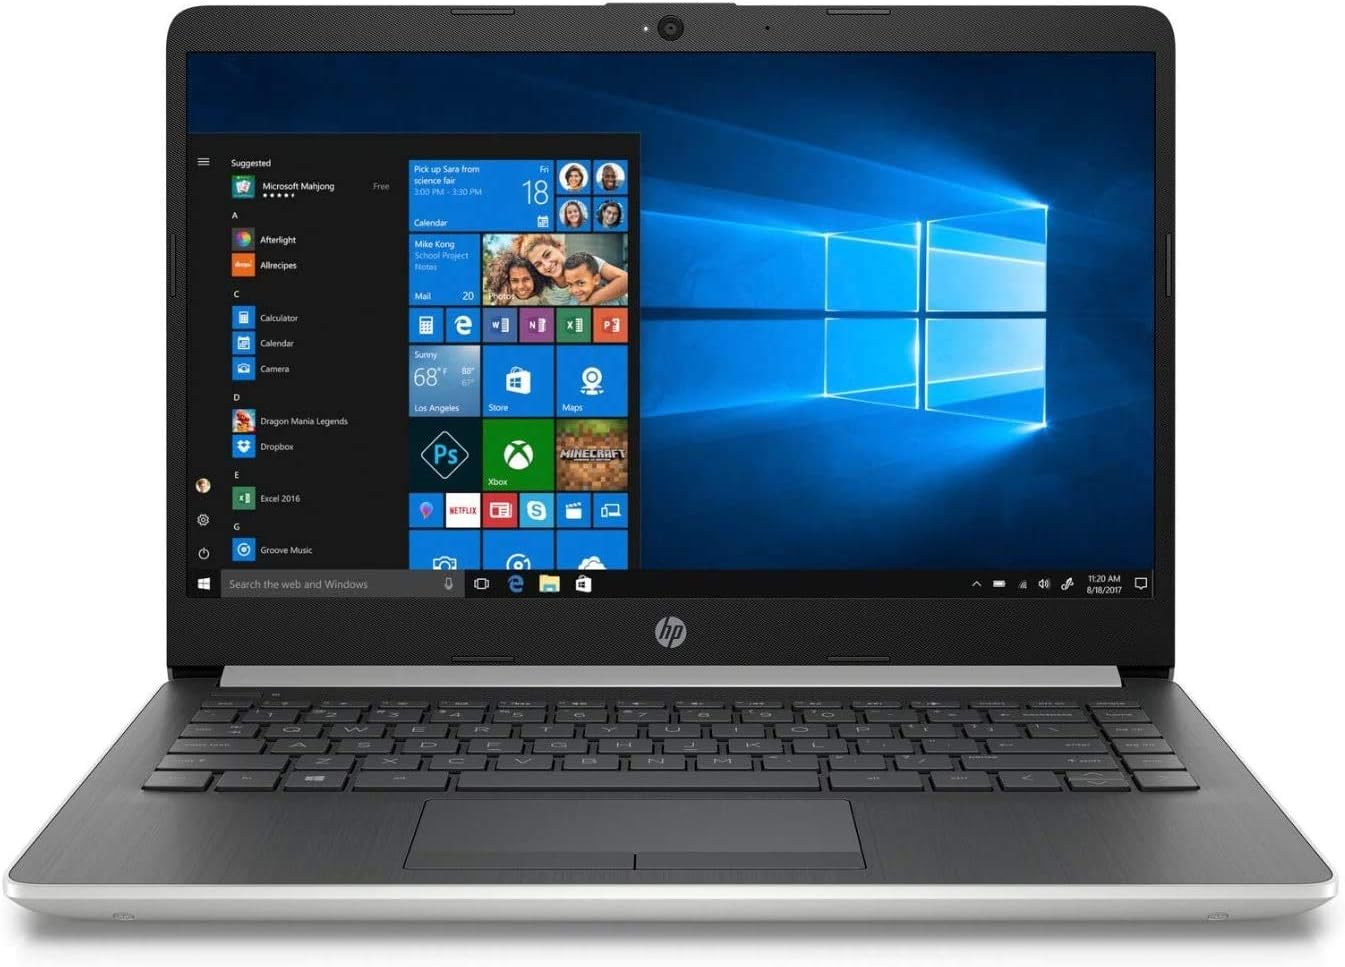 HP Notebook 15-DA1075TU Laptop Price in Pakistan